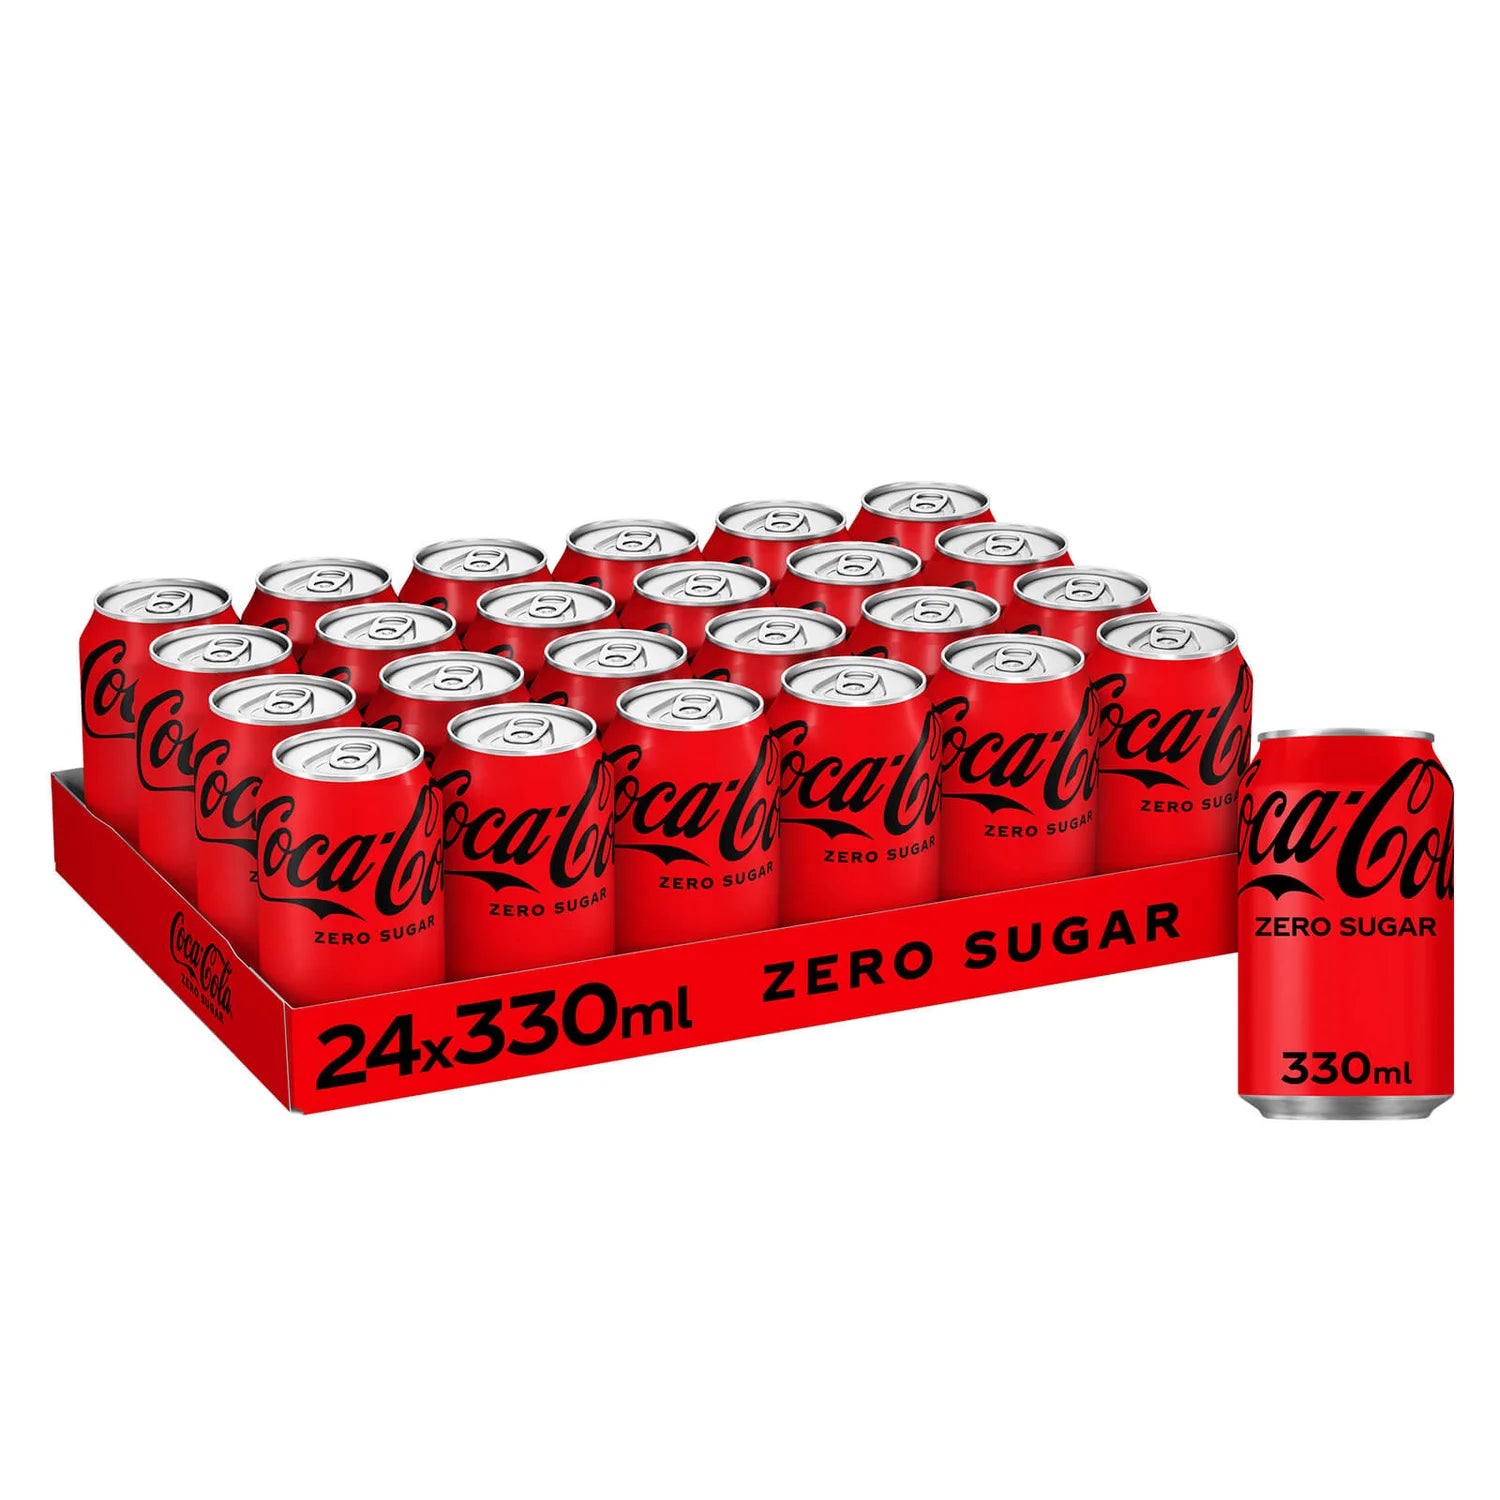 Coca-Cola Zero Sugar - 330ml - Case of 24